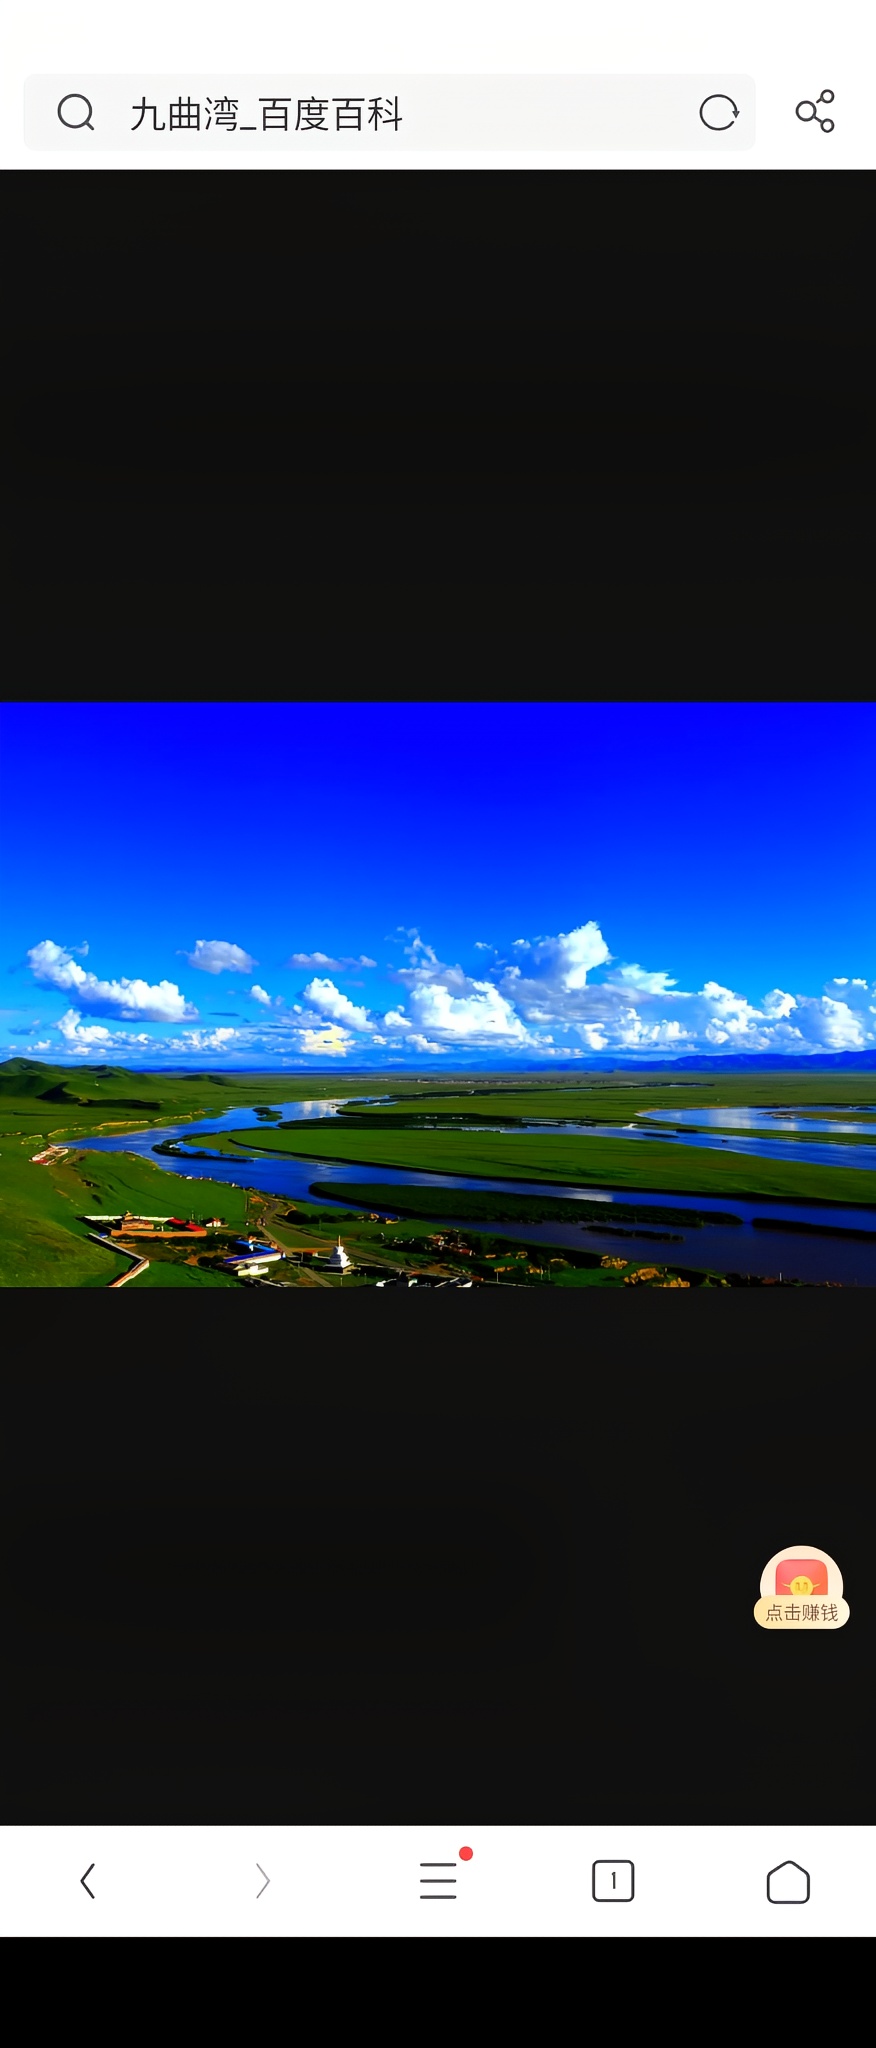 九曲湾是乌拉盖河最为蜿蜒曲折的河段，位于乌拉盖湖东面，向西与乌拉盖湖入口相连，沿河北岸生长着红柳。九